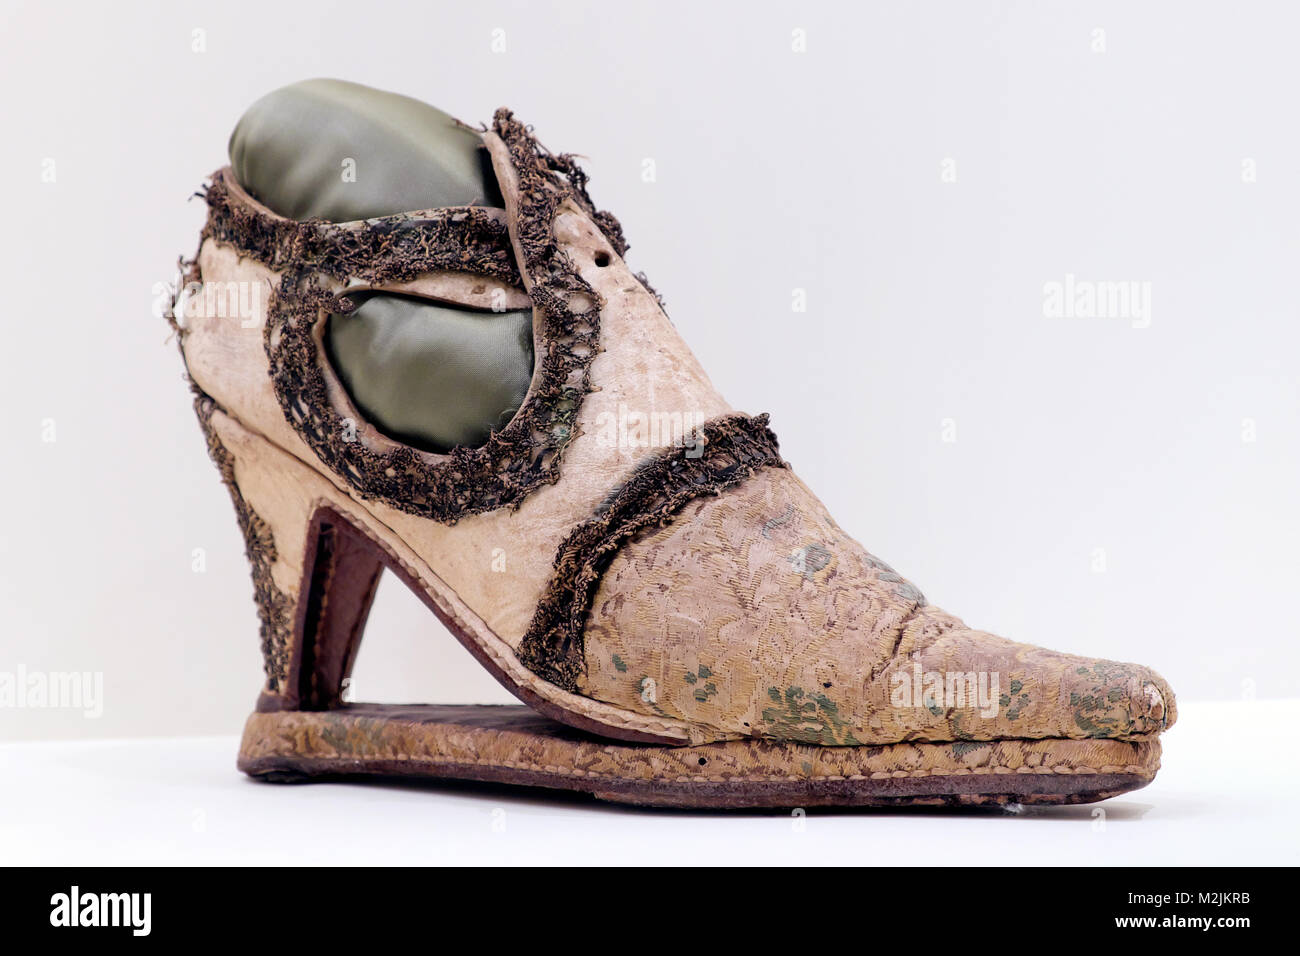 Slap-Sohle Schuh, Musée International de la Chaussure/International Shoe Museum, Romans-sur-Isère, Drôme, Frankreich Stockfoto